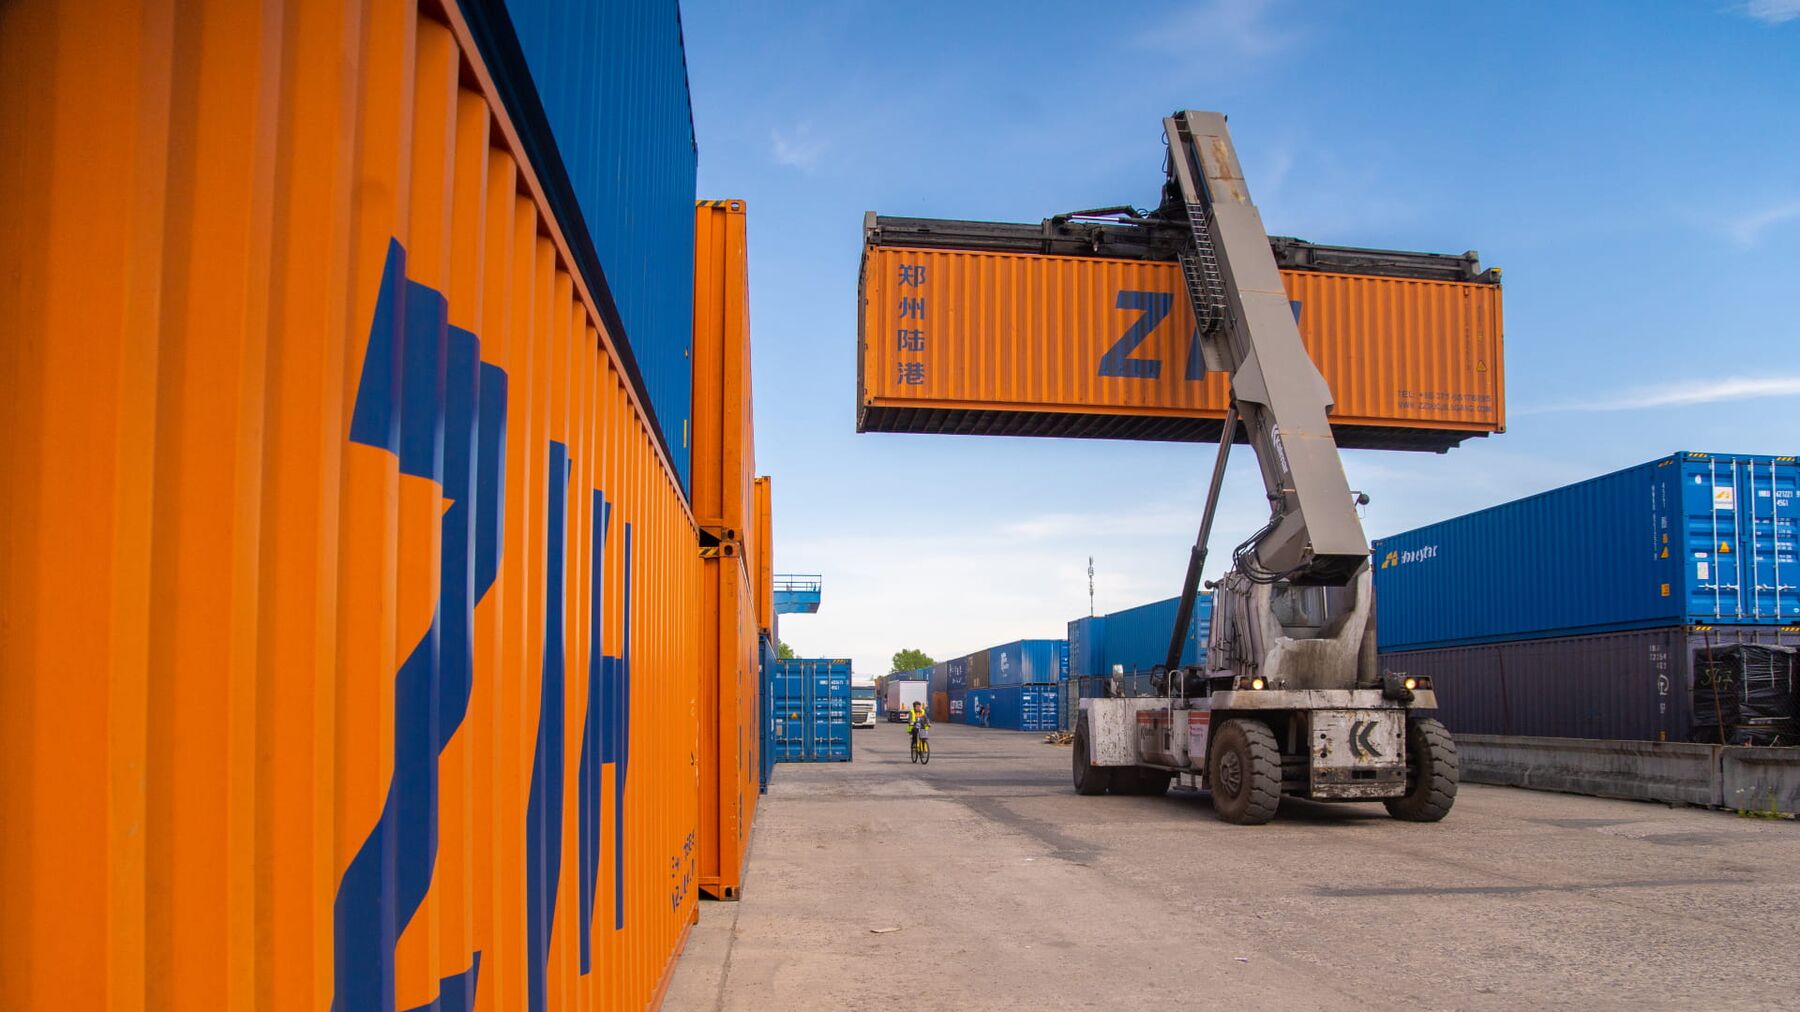 BVT предоставляет комплекс услуг: погрузка груза в контейнер, доставка по железной дороге на территории Беларуси и Польши